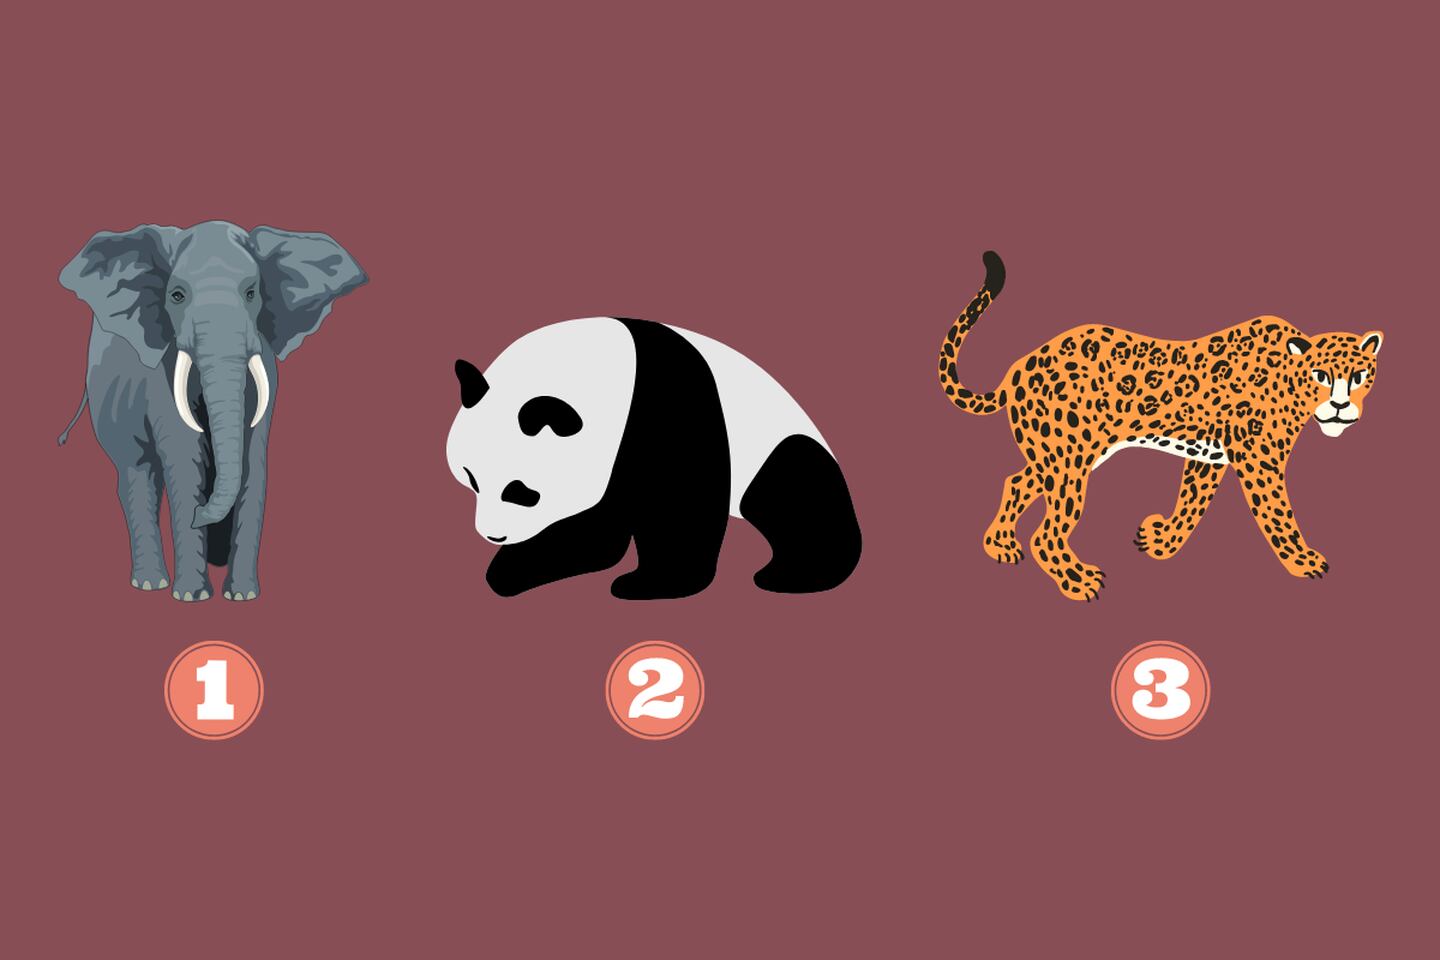 tres opciones en este test de personalidad: un elefante, un panda y un jaguar.